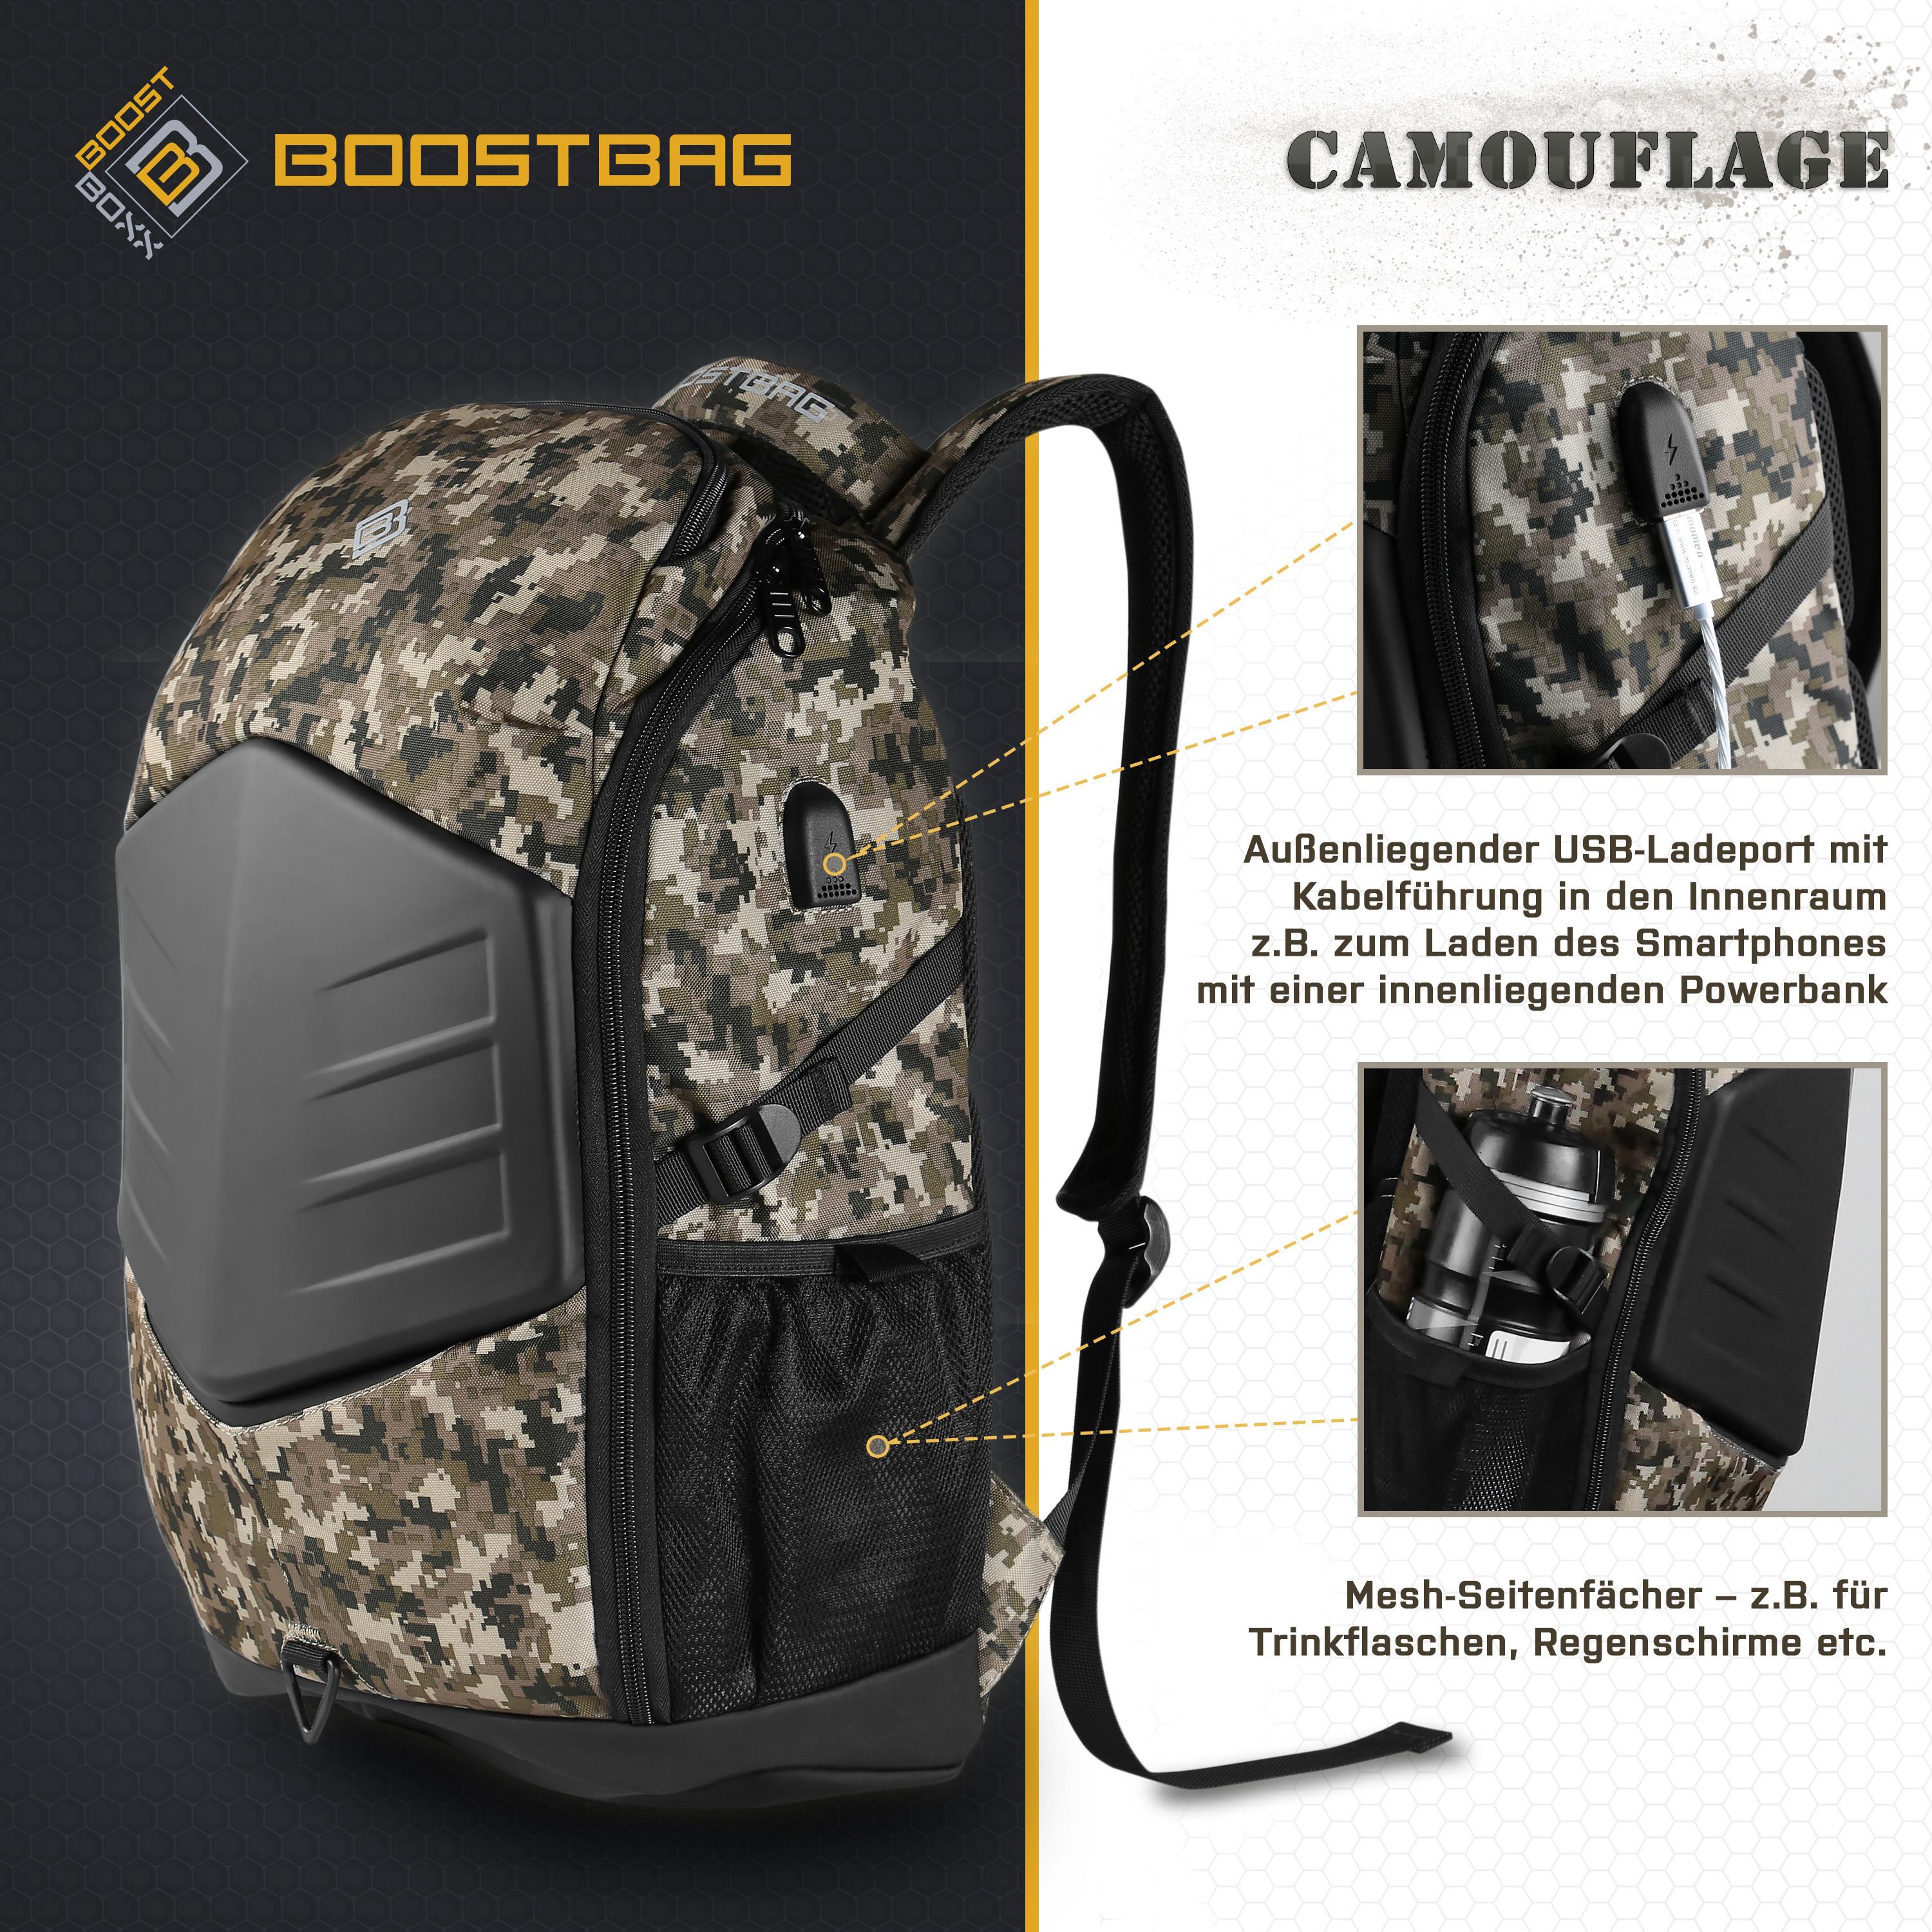 CSL Computer | BoostBoxx BoostBag Camouflage - Notebook-Rucksack bis 17,3